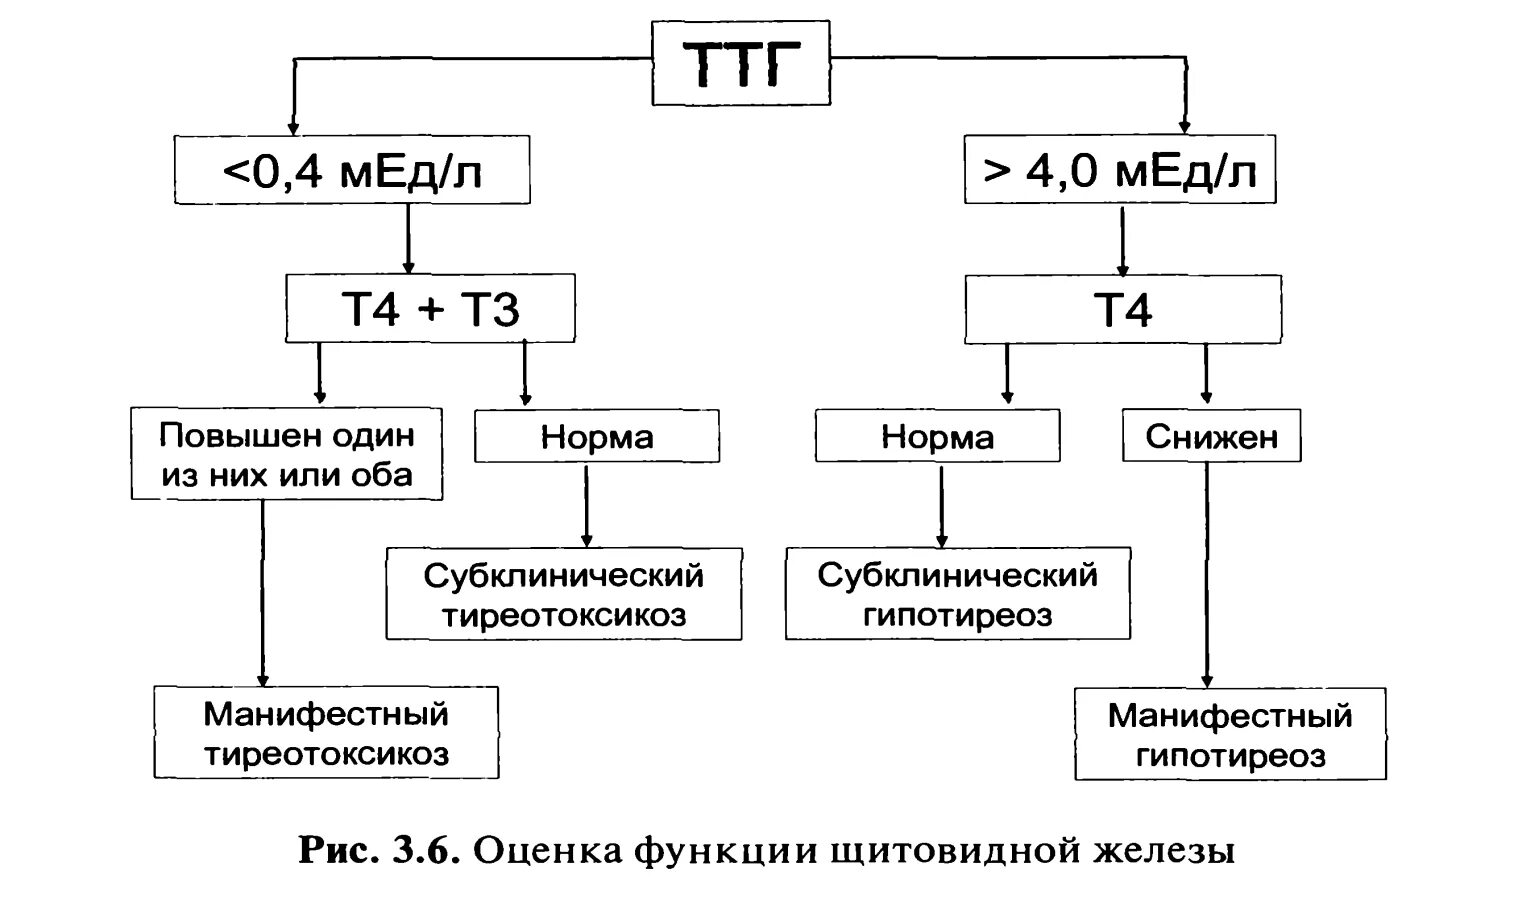 Гипотиреоз при нормальном ТТГ т3 т4. Низкий т4 при нормальном ТТГ И повышенном т3. Снижен т3 при нормальном ТТГ. Норма показателей ТТГ т3 т4.